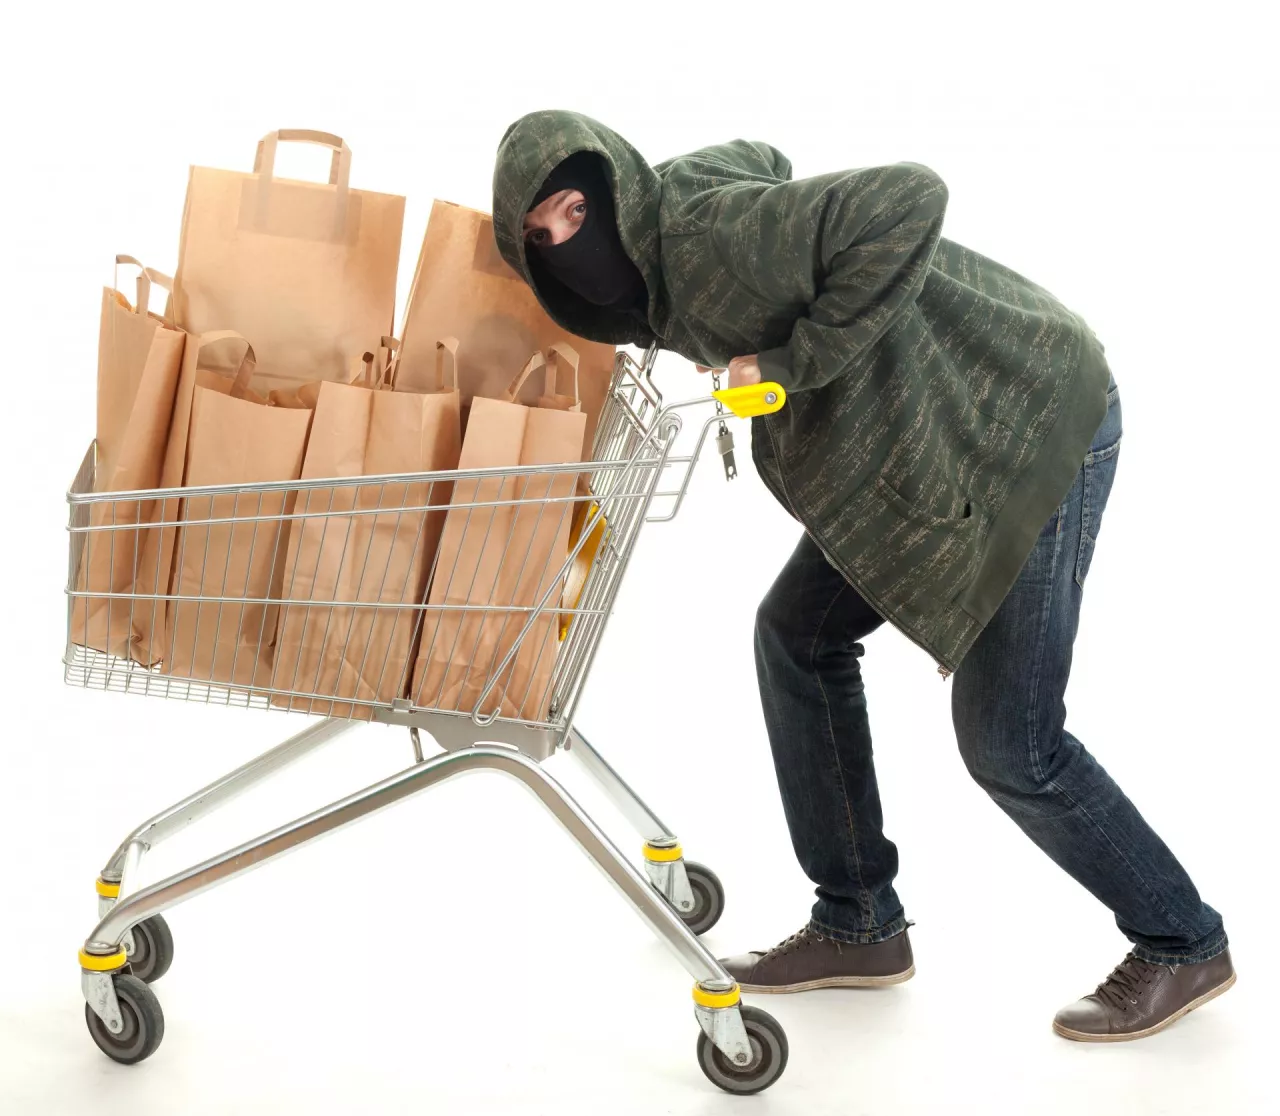 Za kradzież wózków sklepowych grozi do 5 lat pozbawienia wolności (Shutterstock)